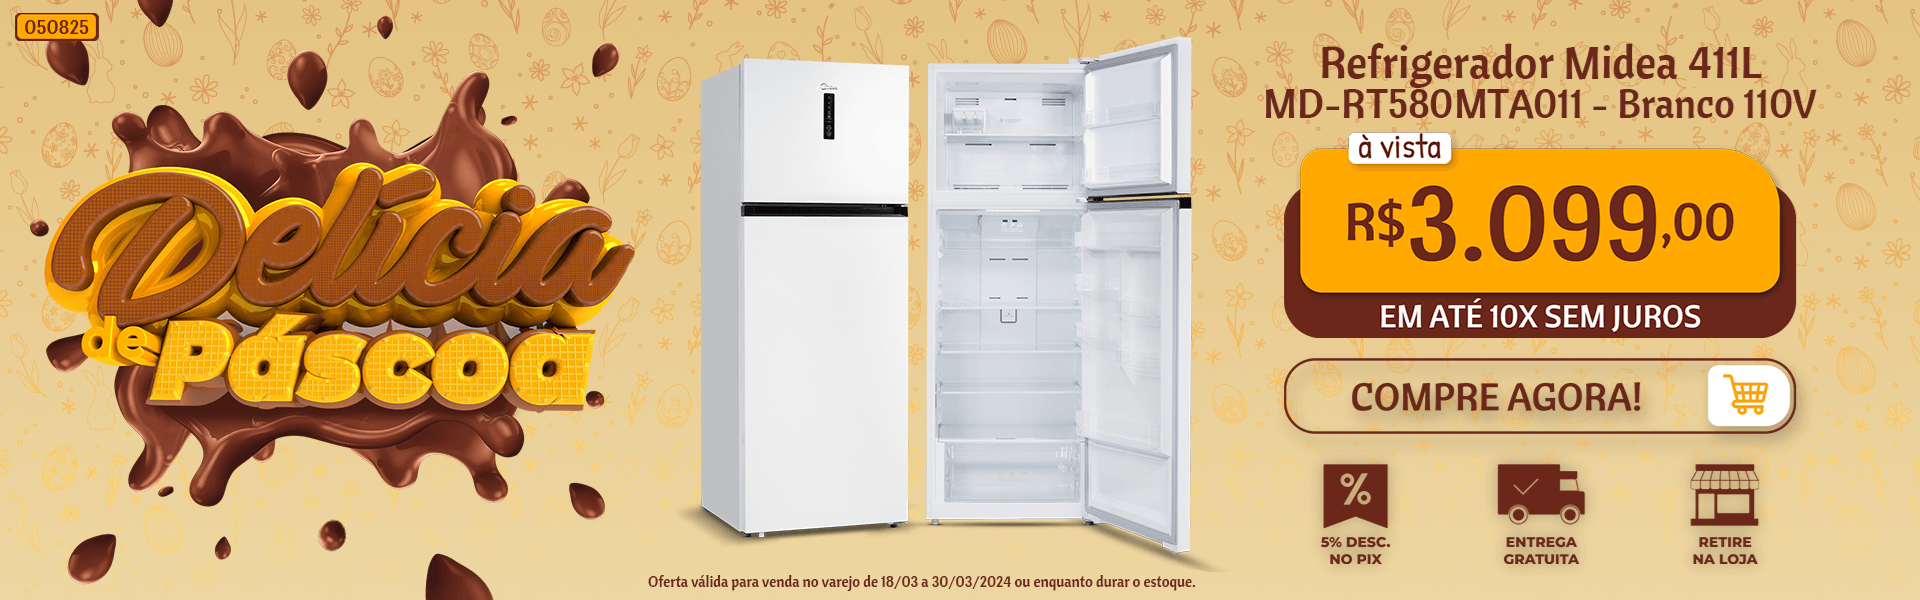 Refrigerador Midea 411L Branco